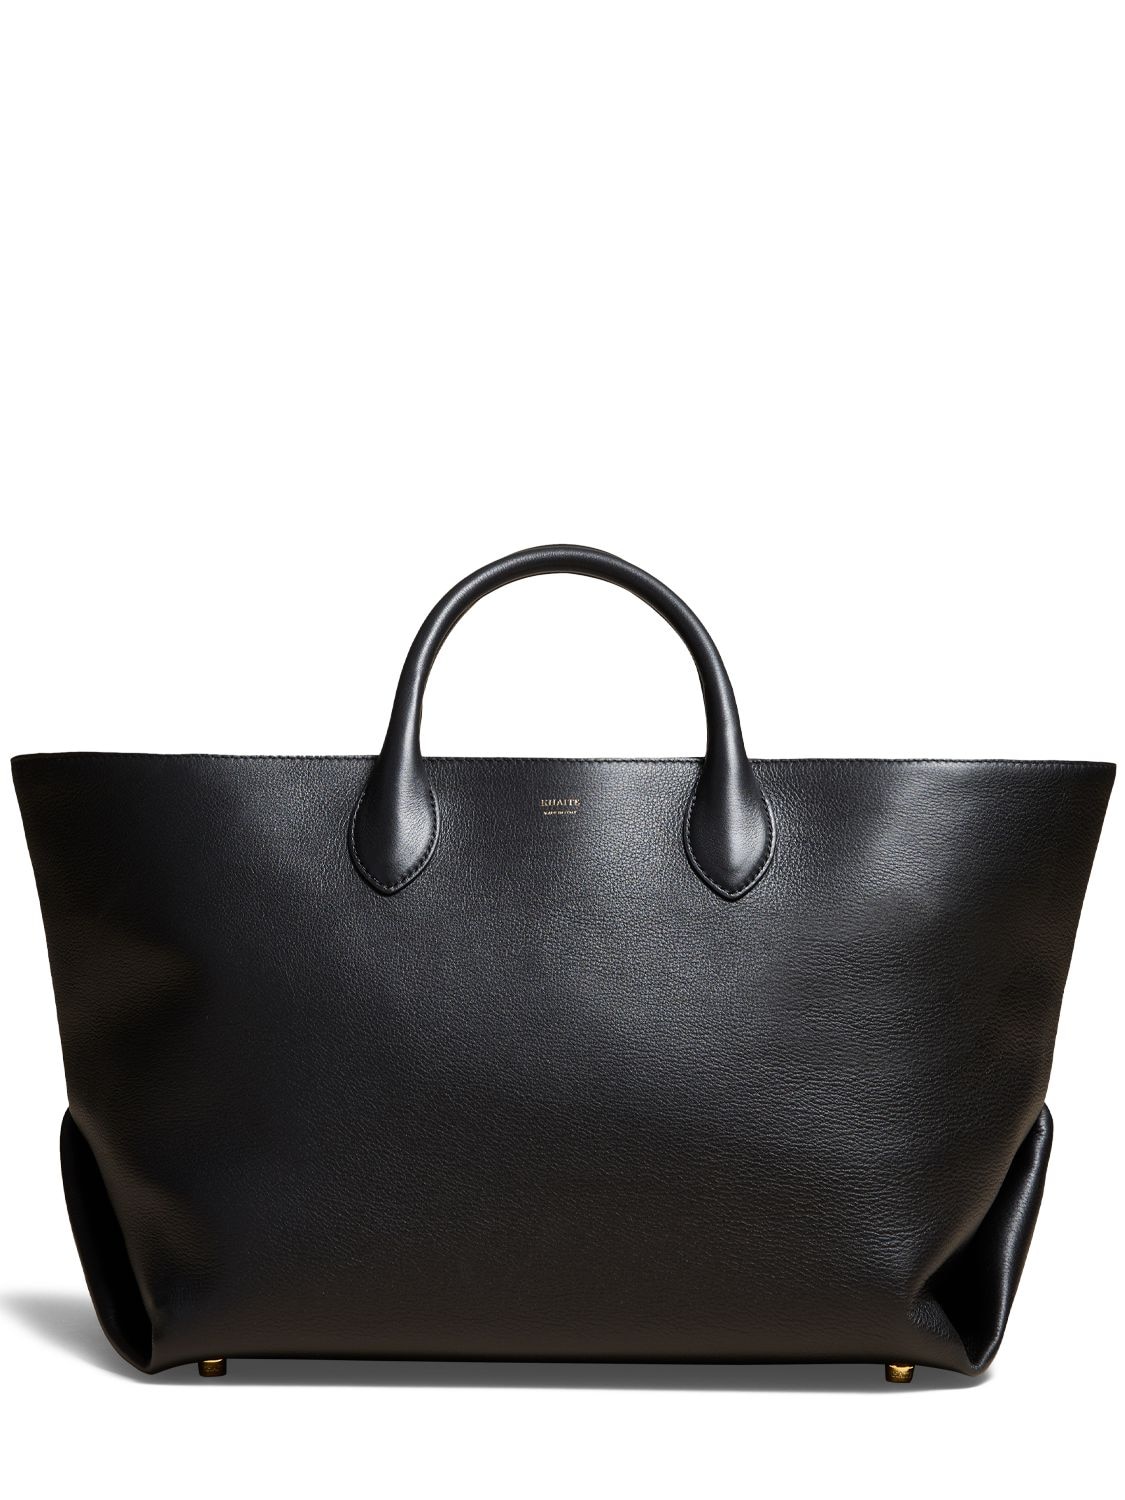 Khaite Medium Amelia Envelope Leather Tote Bag In Black